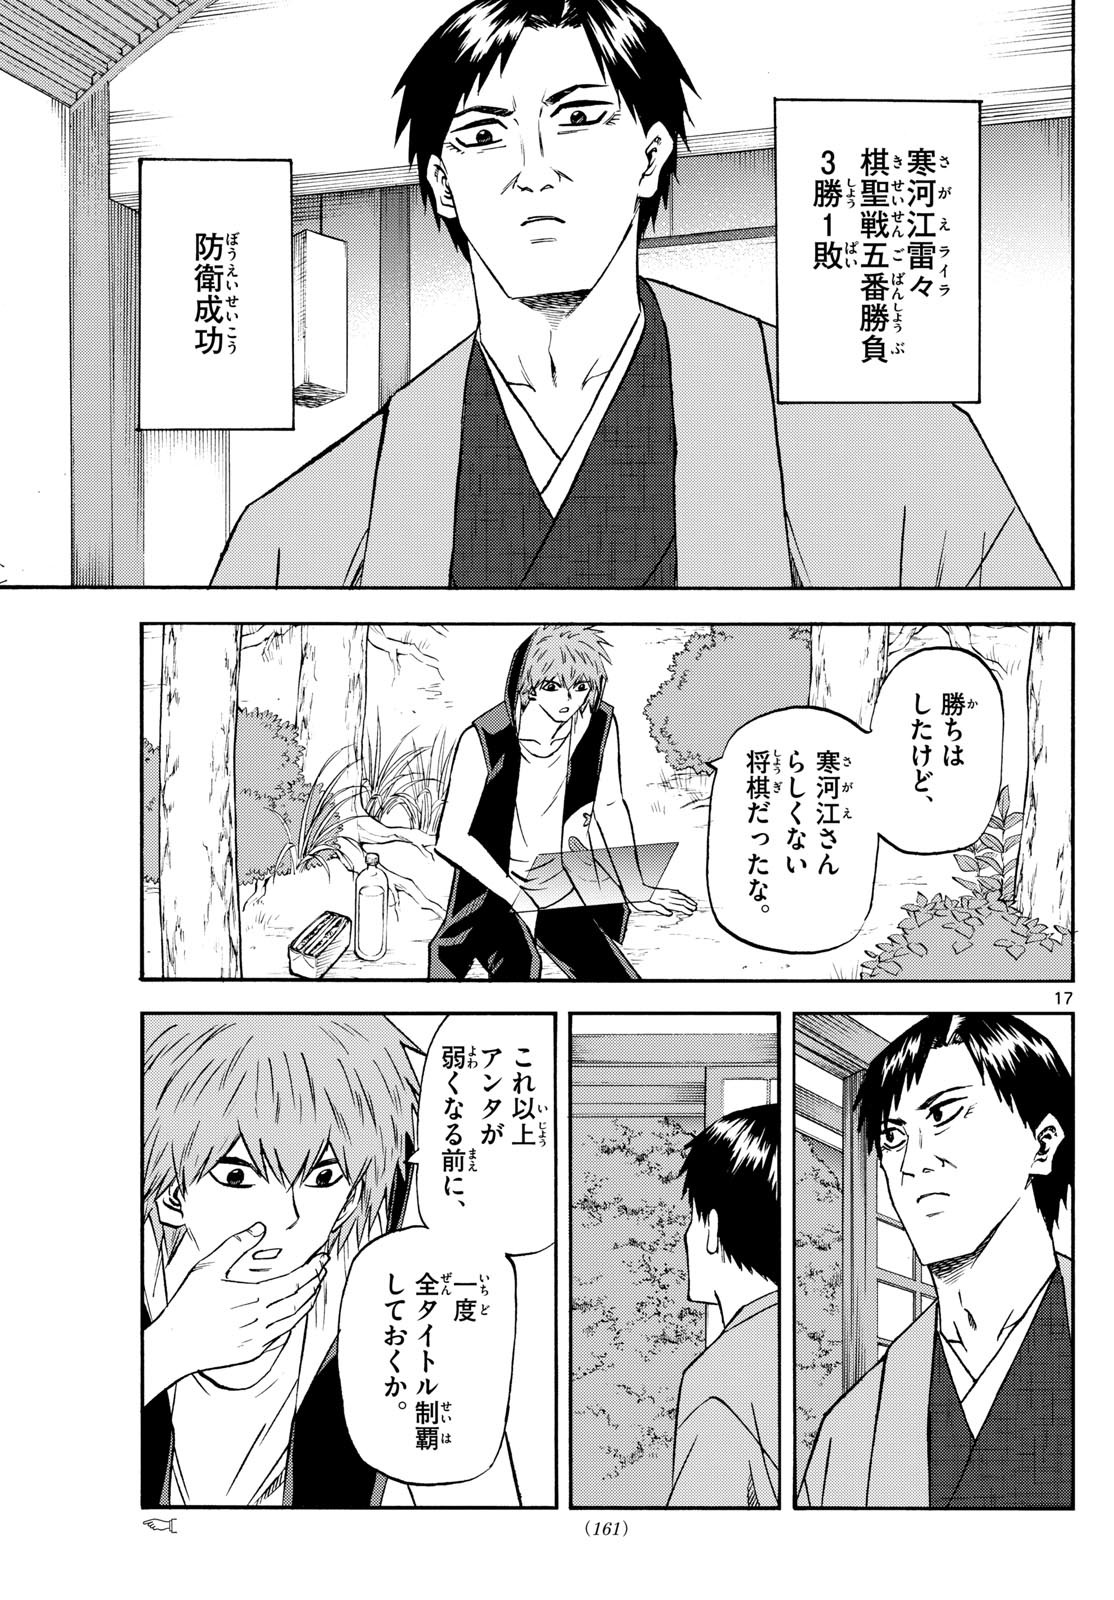 Ryu-to-Ichigo - Chapter 195 - Page 17